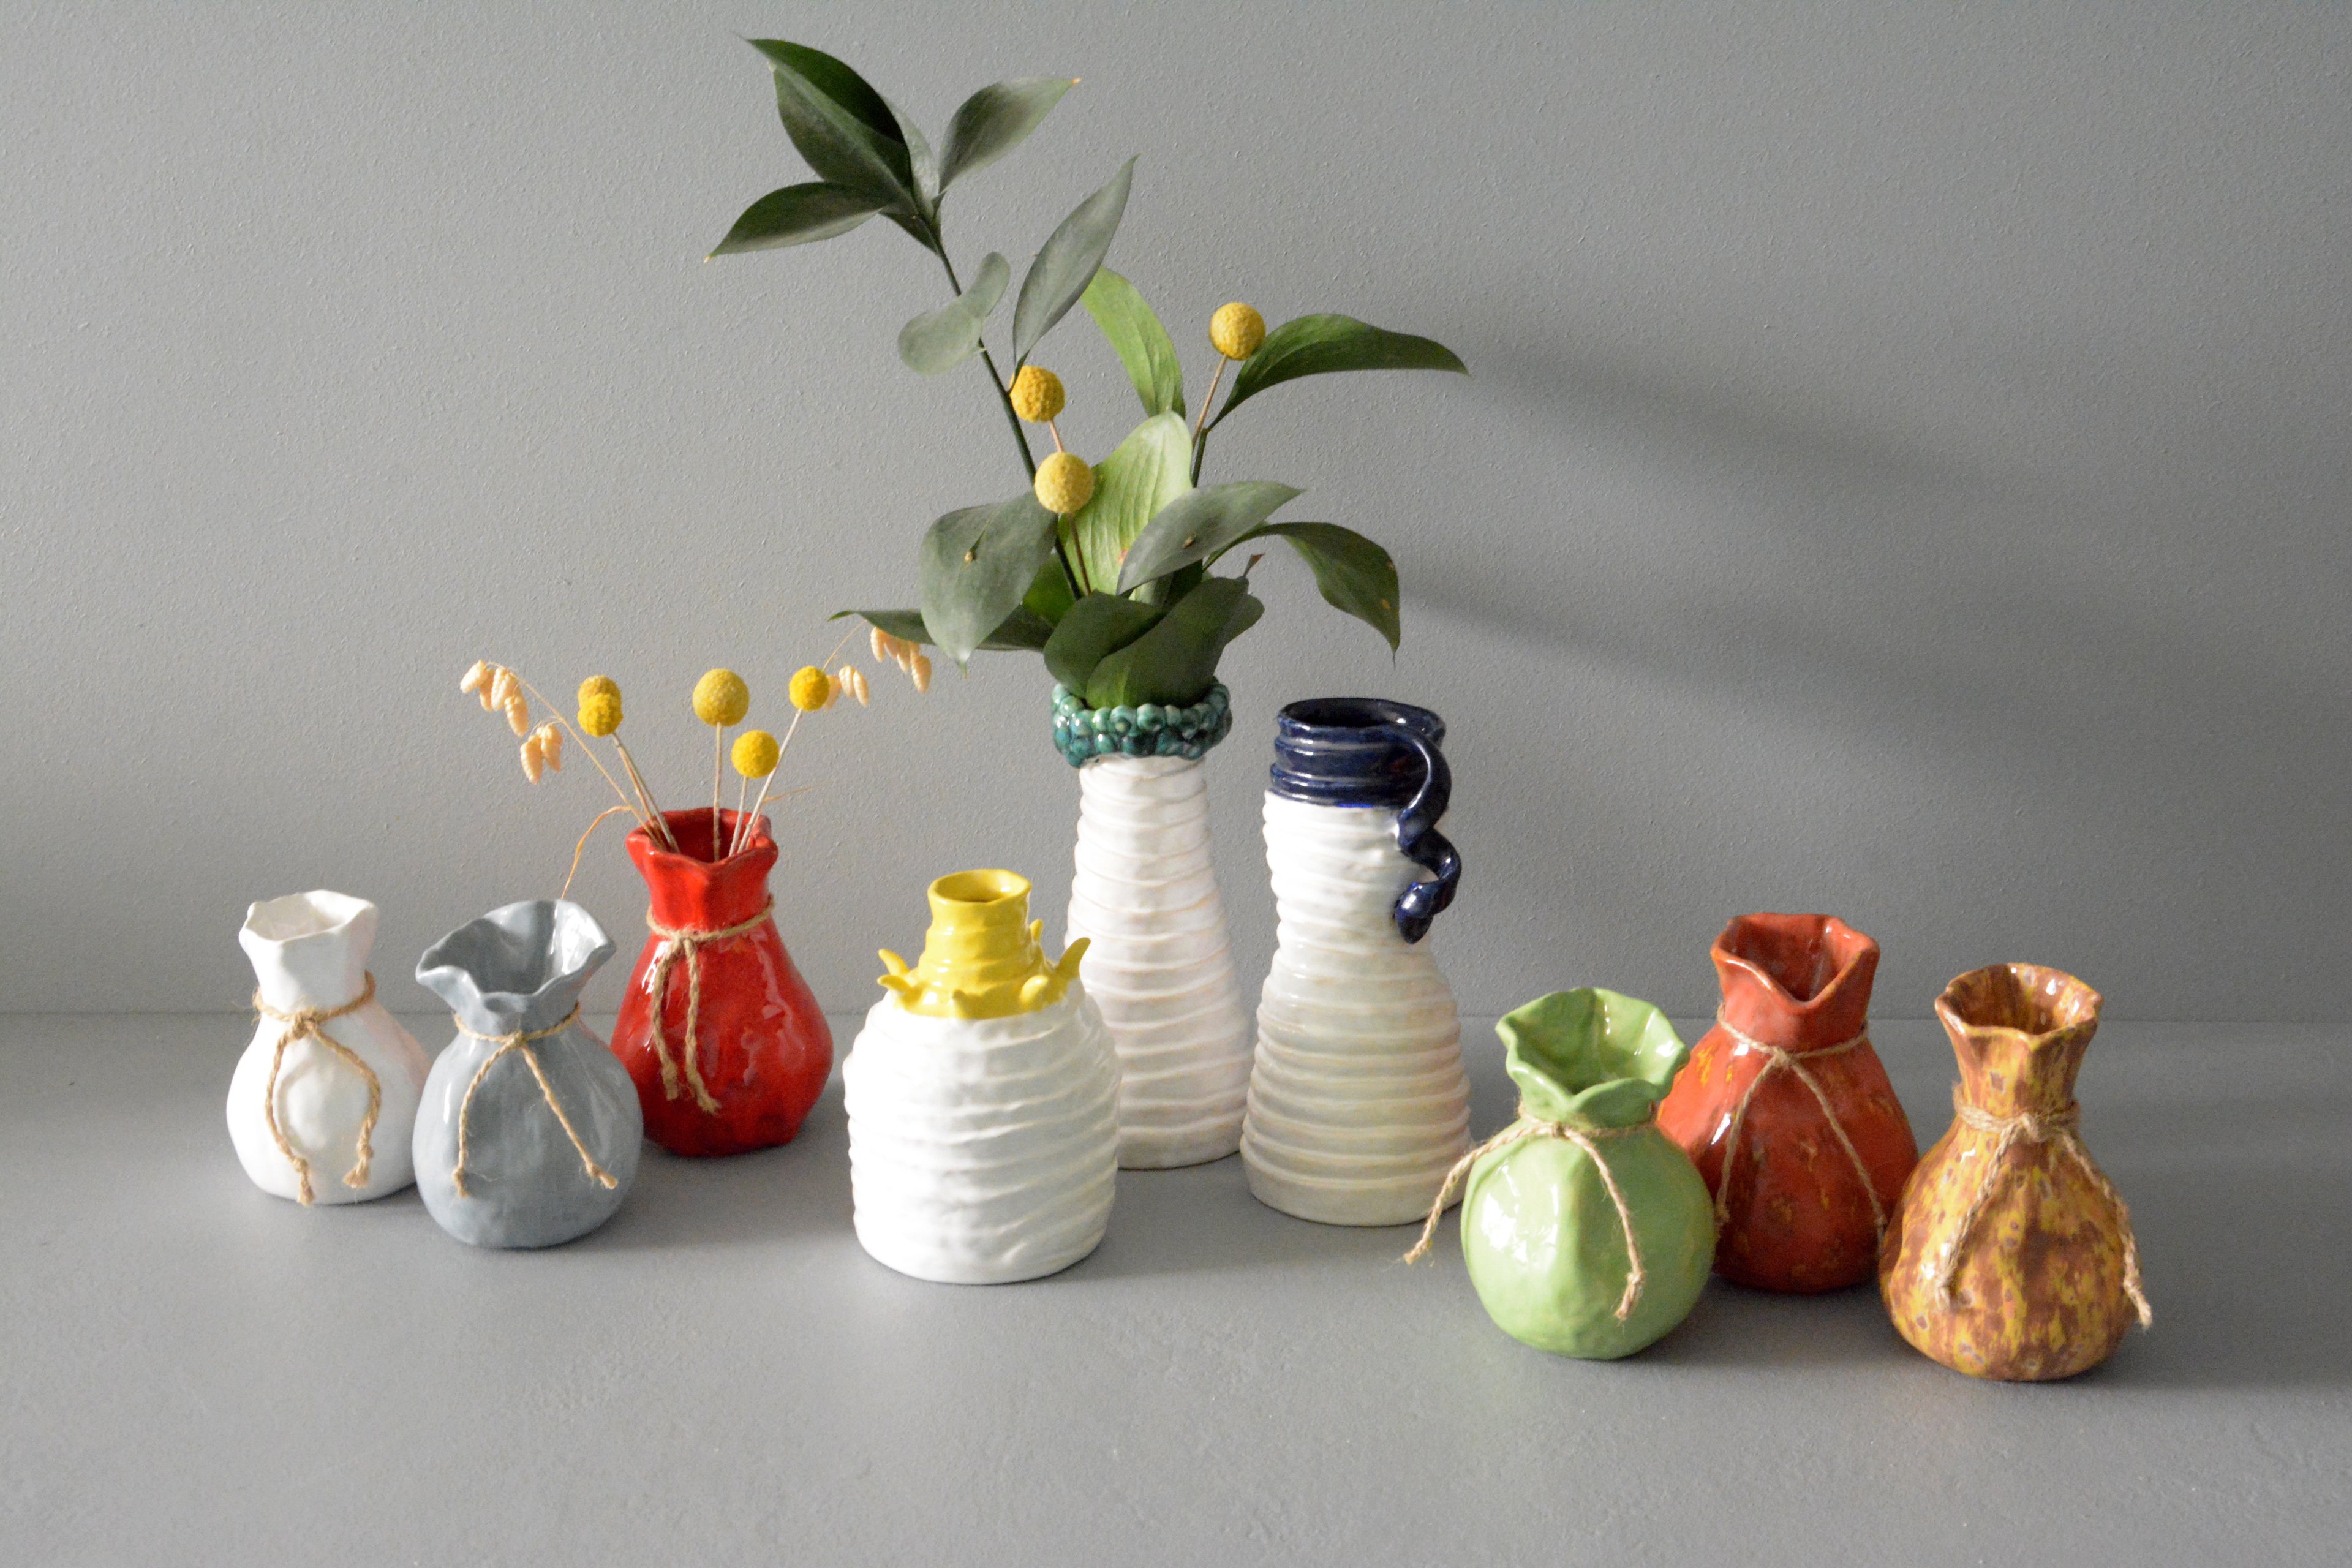 Interior ceramic handmade vases